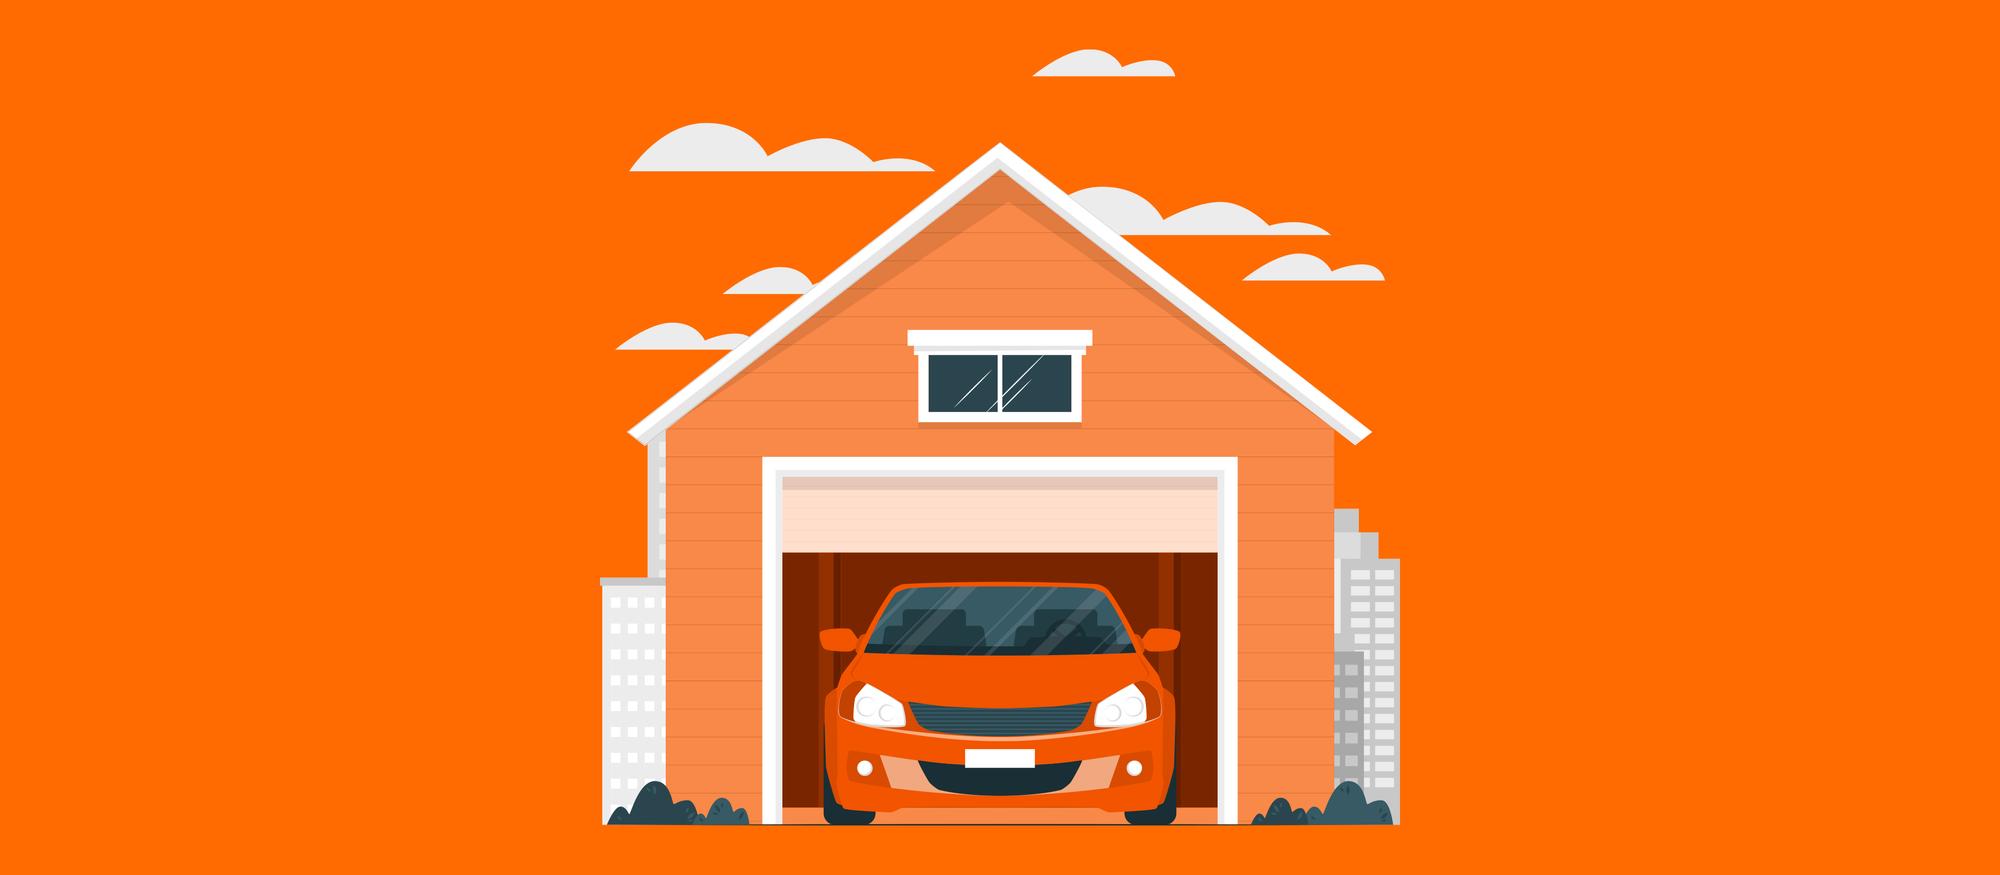 Ilustração representa a pergunta "inquilino pode alugar vaga de garagem?"